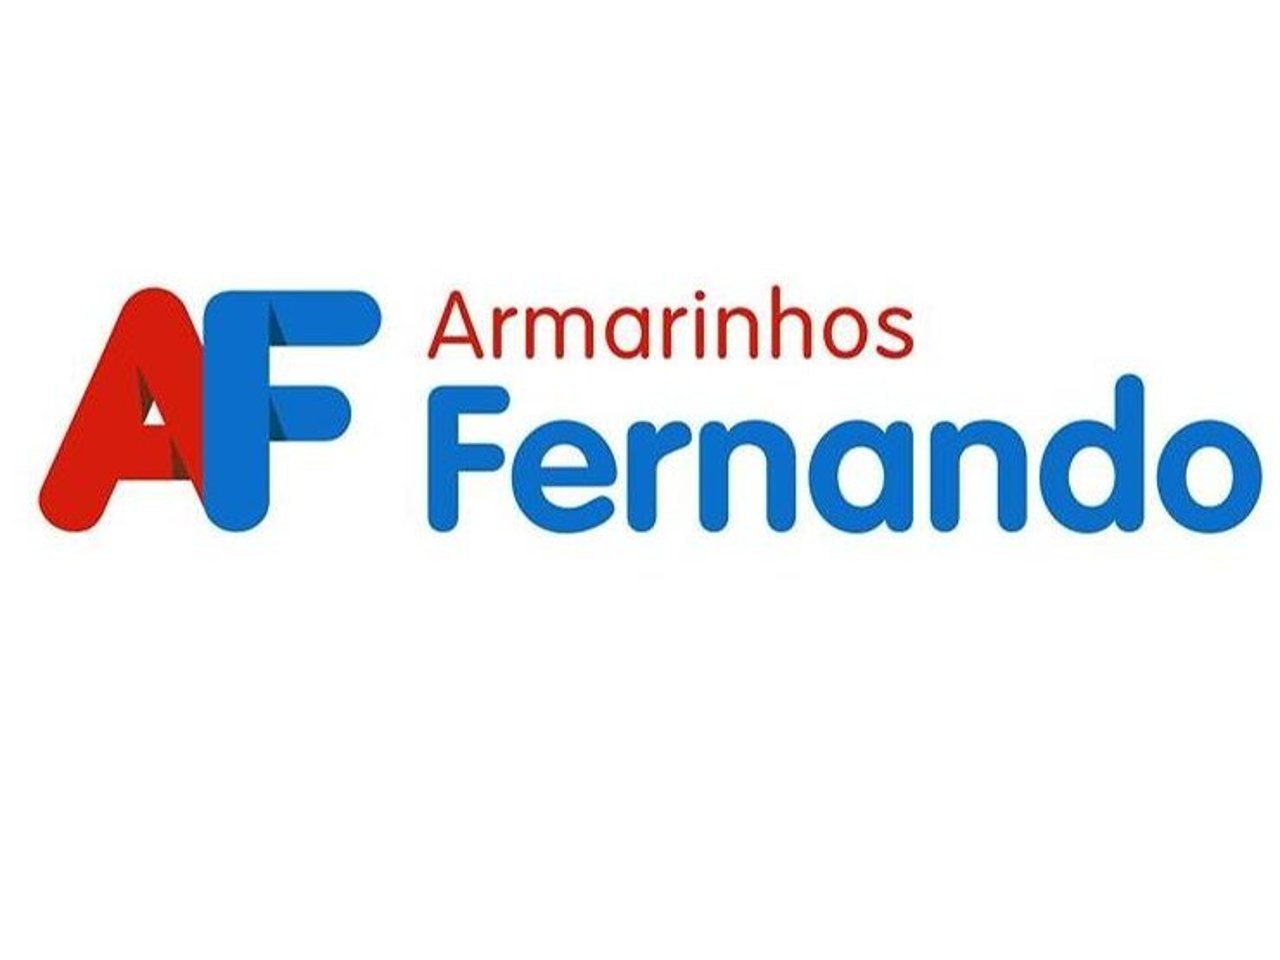 Armarinhos Fernando 